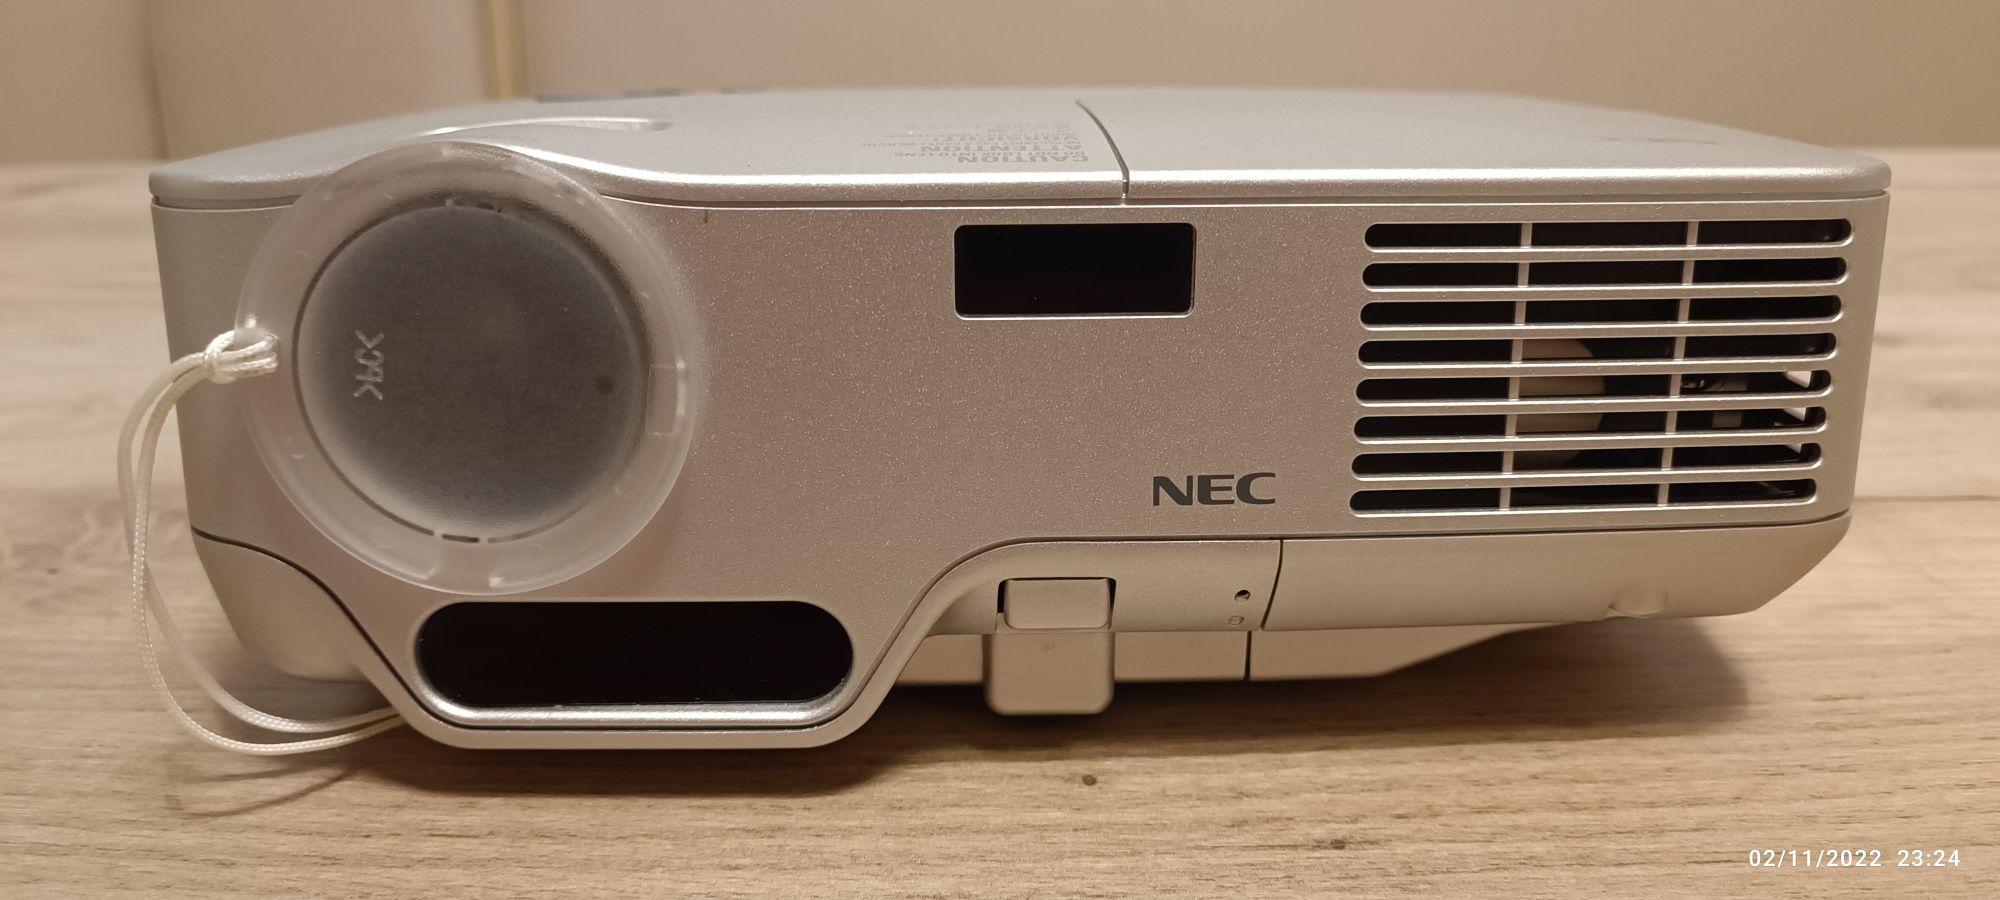 Videoproiector cu Autofocus - NEC DLP - NP40G